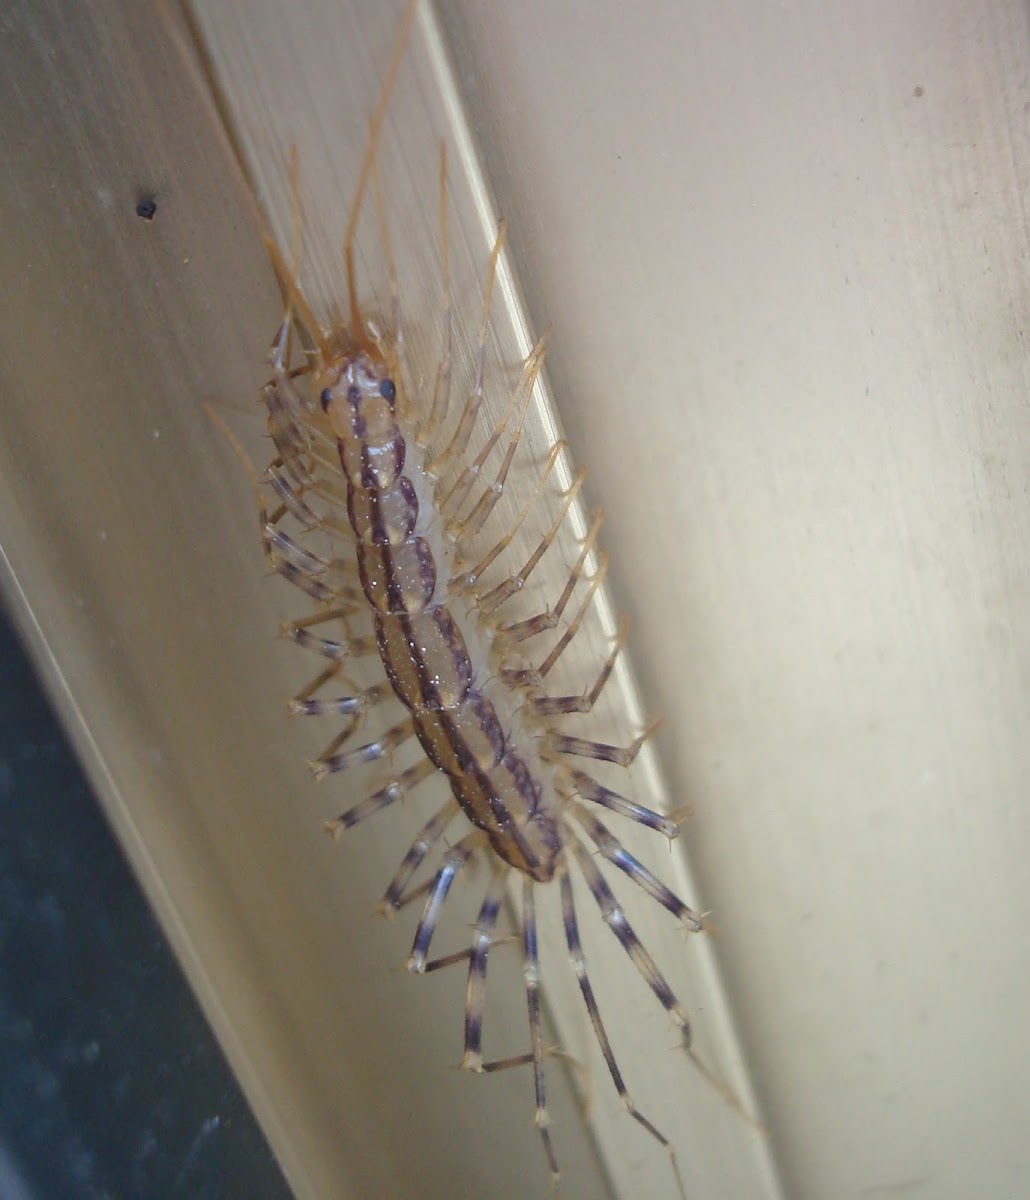 House Centipede / Kućna stonoga